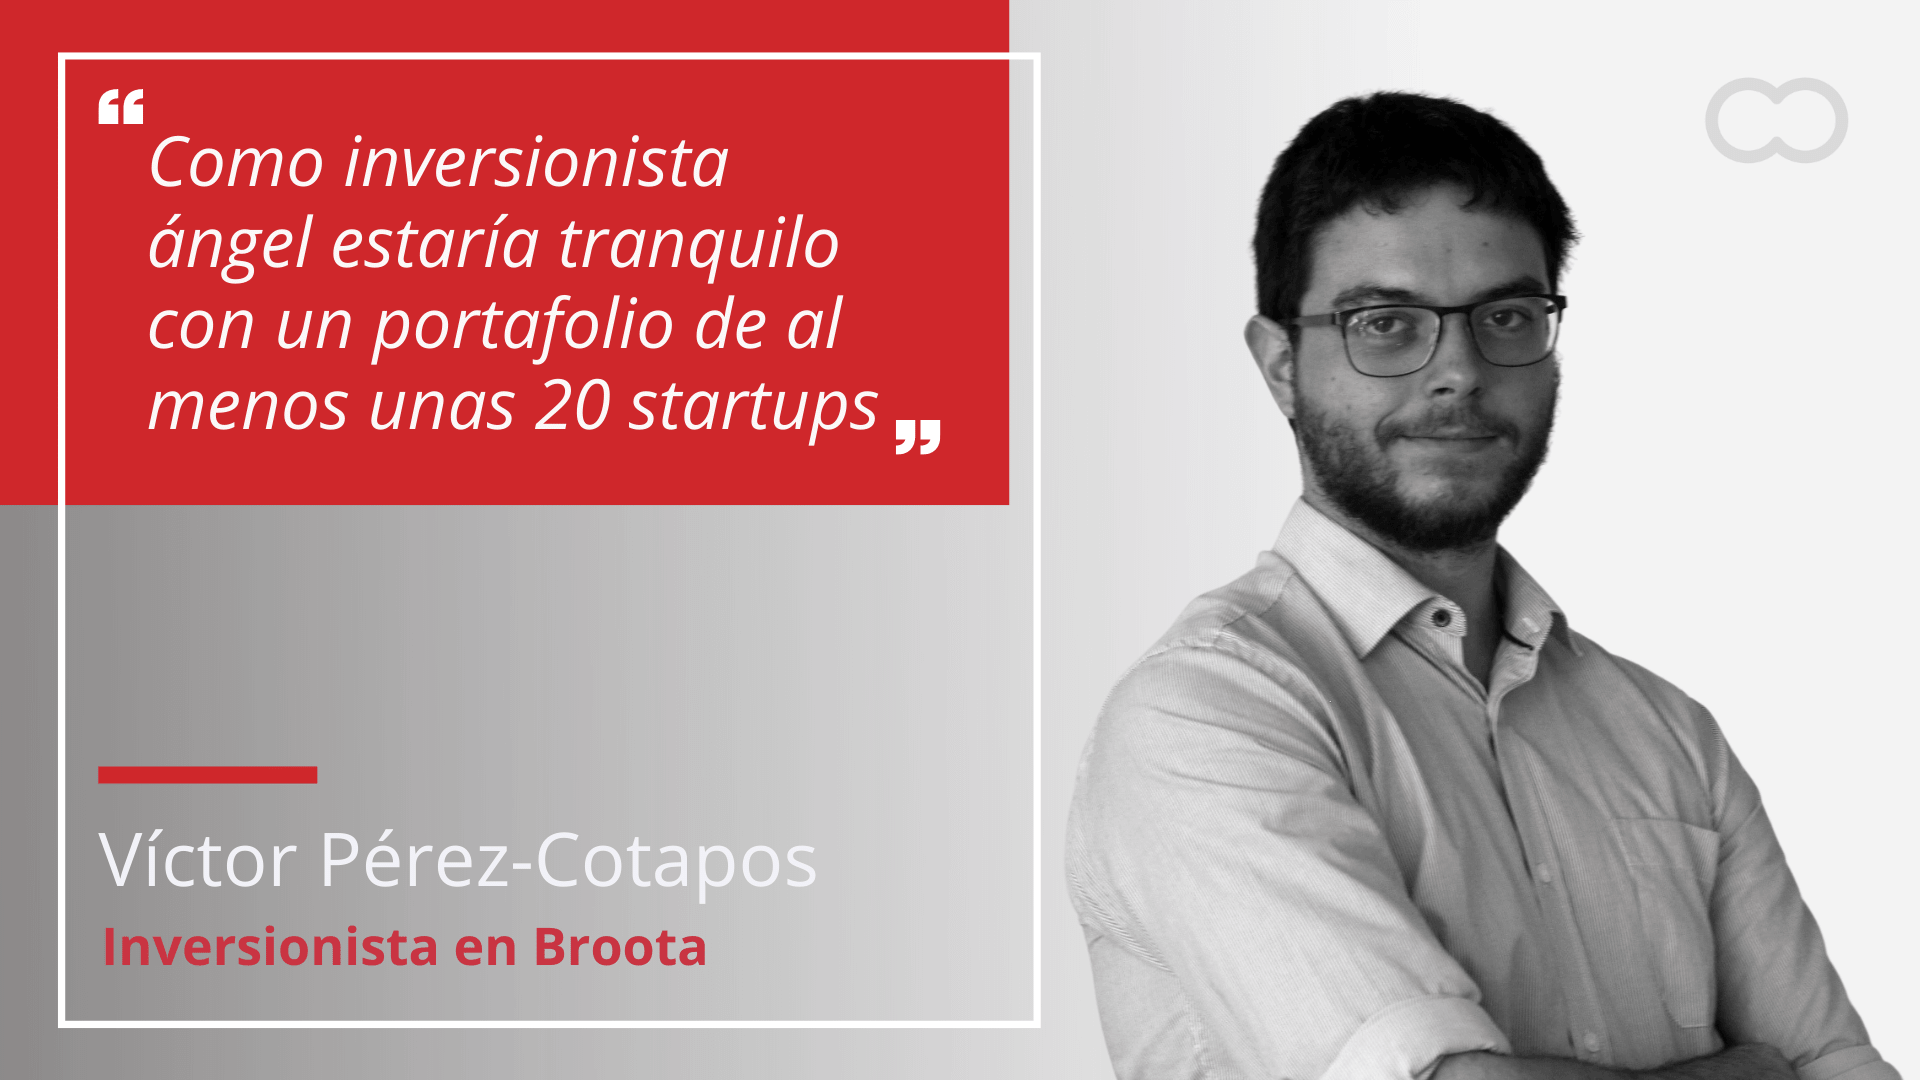 Víctor Pérez-Cotapos, inversionista en Broota: “Como inversionista ángel estaría tranquilo con un portafolio de al menos unas 20 startups”